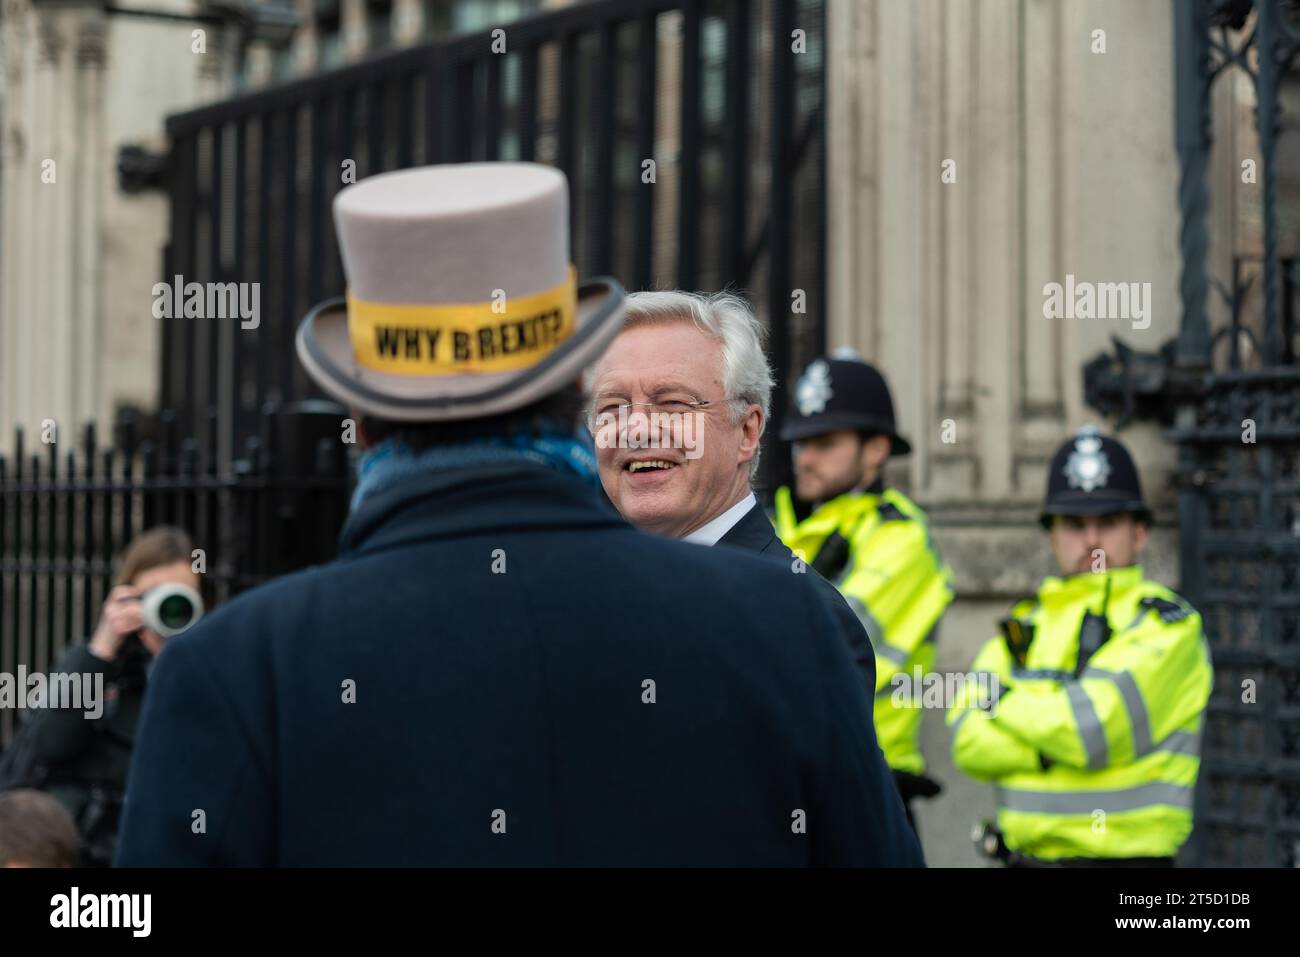 Steve Bray se disputant avec le député Brexiteer David Davis devant le Parlement. Côtés Brexit. Ancien secrétaire d'État à la sortie de l'Union européenne Banque D'Images